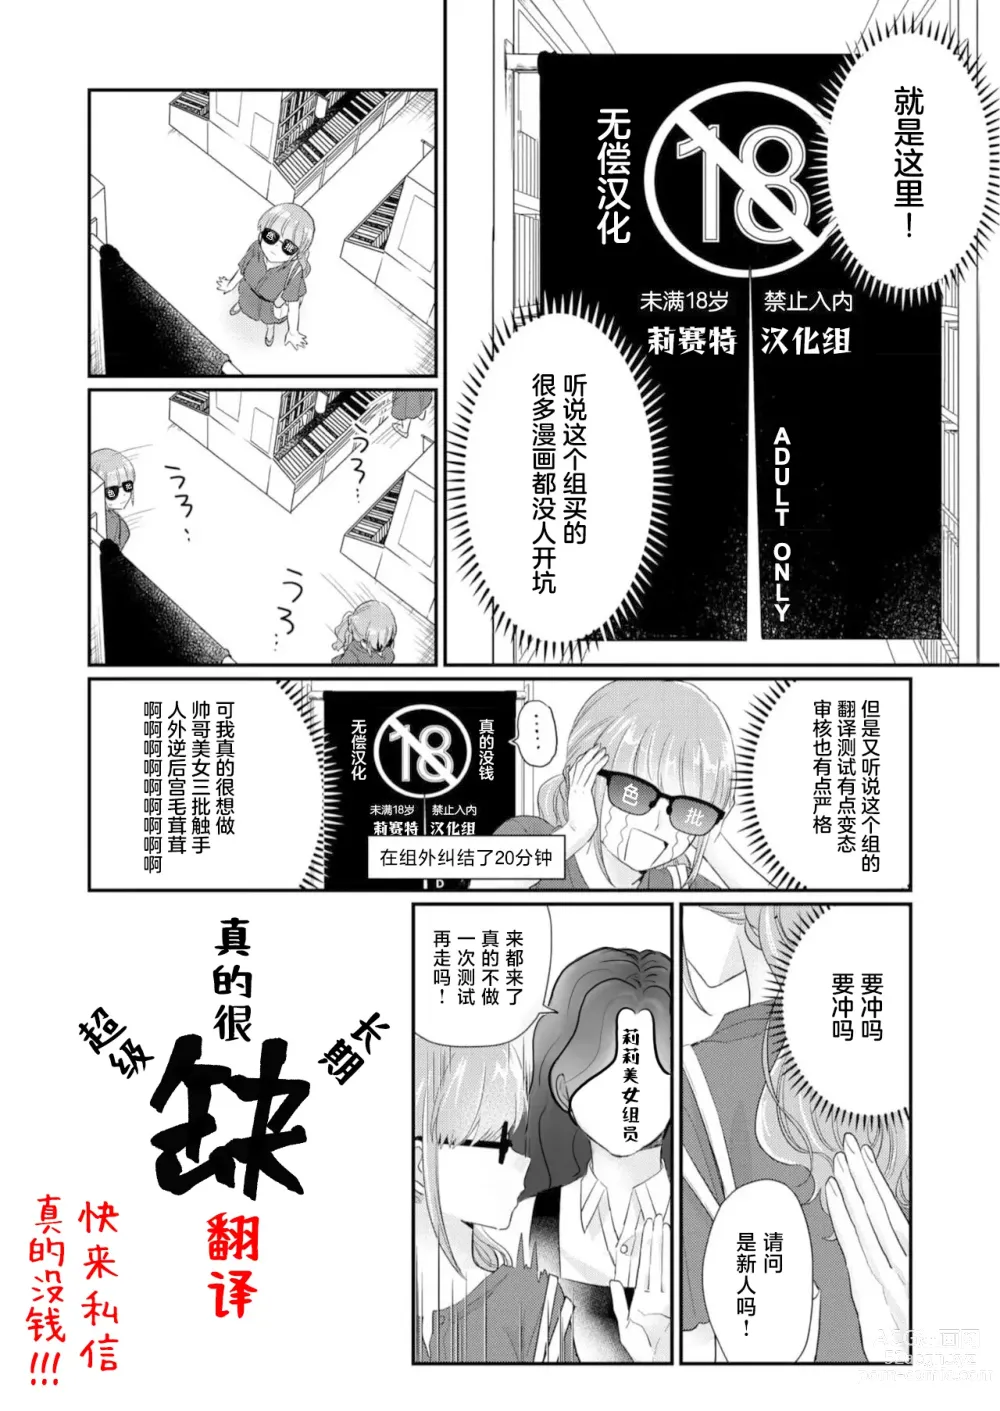 Page 205 of manga 败在他的眼泪攻势下 奈奈大小姐想被哭唧唧的男子推倒！ 1-6